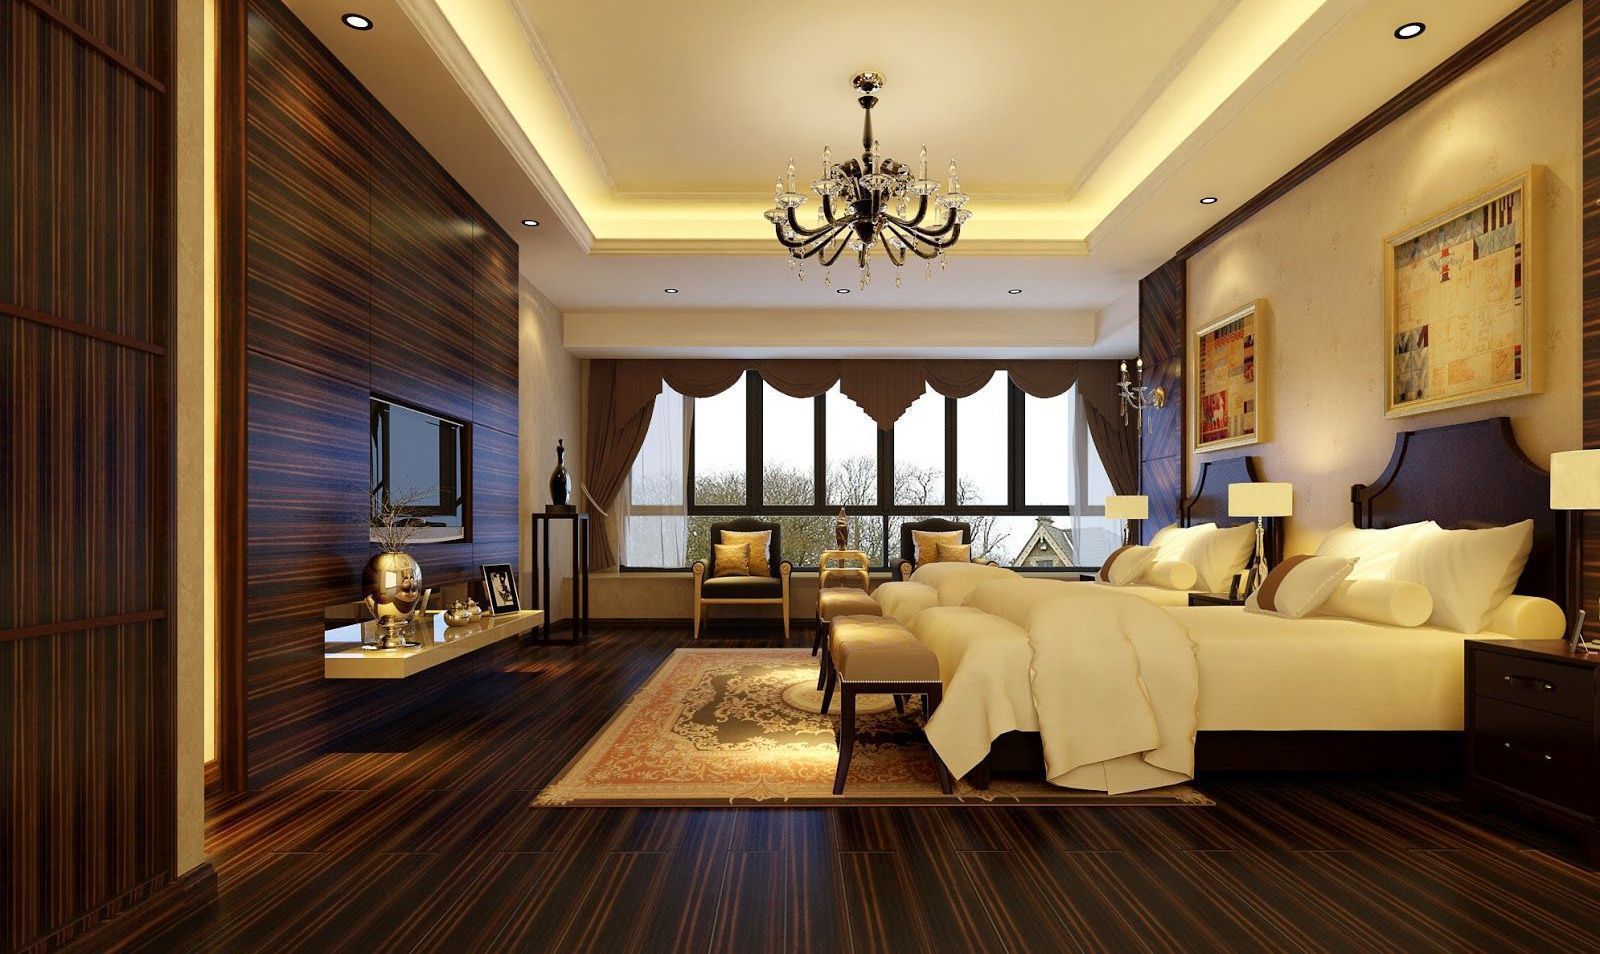 Trọn bộ kinh nghiệm thiết kế nội thất phòng ngủ khách sạn được tiết lộ từ chuyên gia